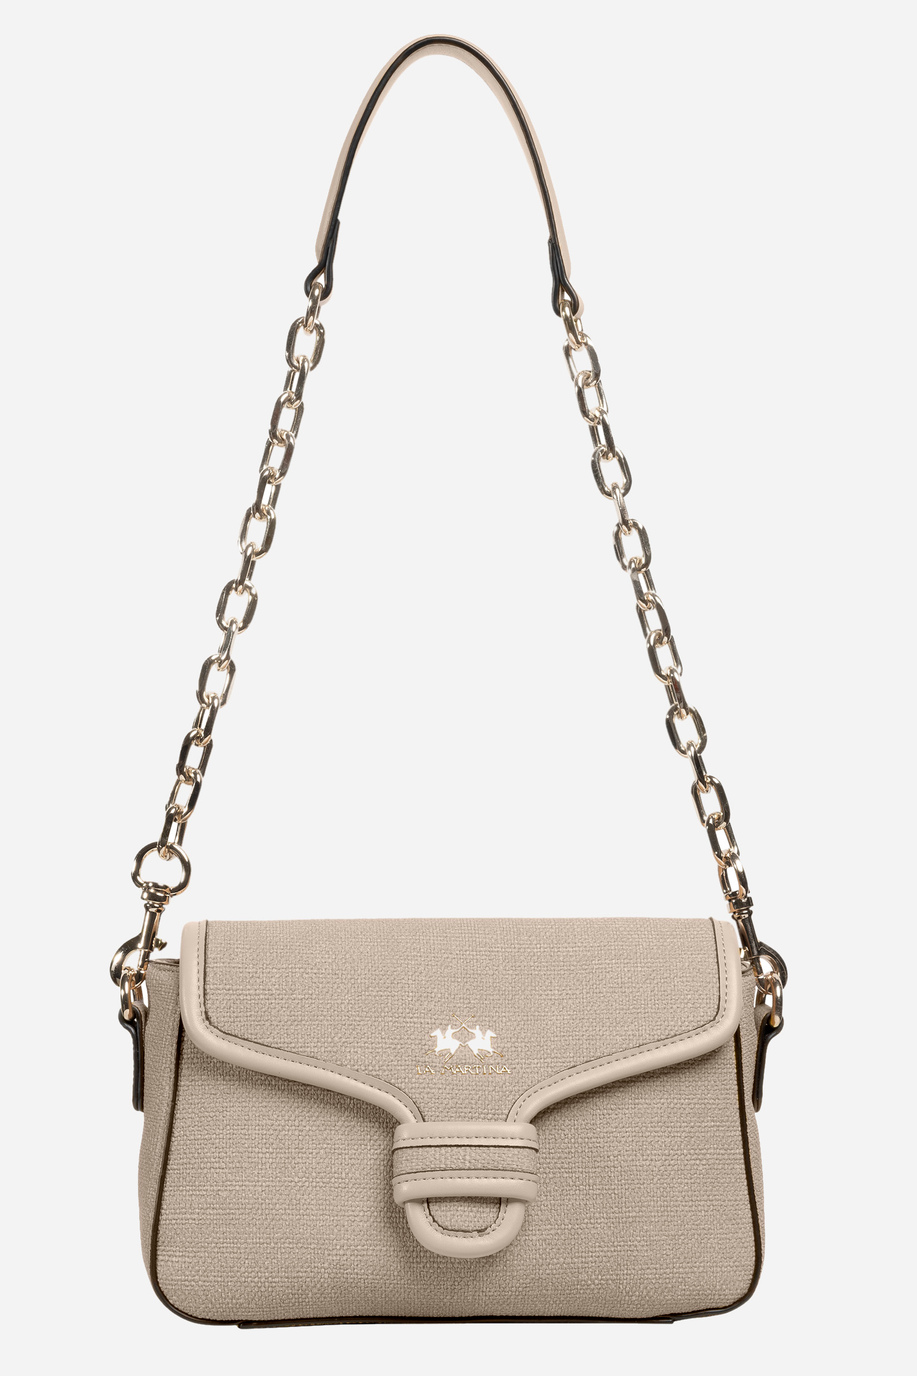 Women's PU fabric shoulder bag - Bags | La Martina - Official Online Shop